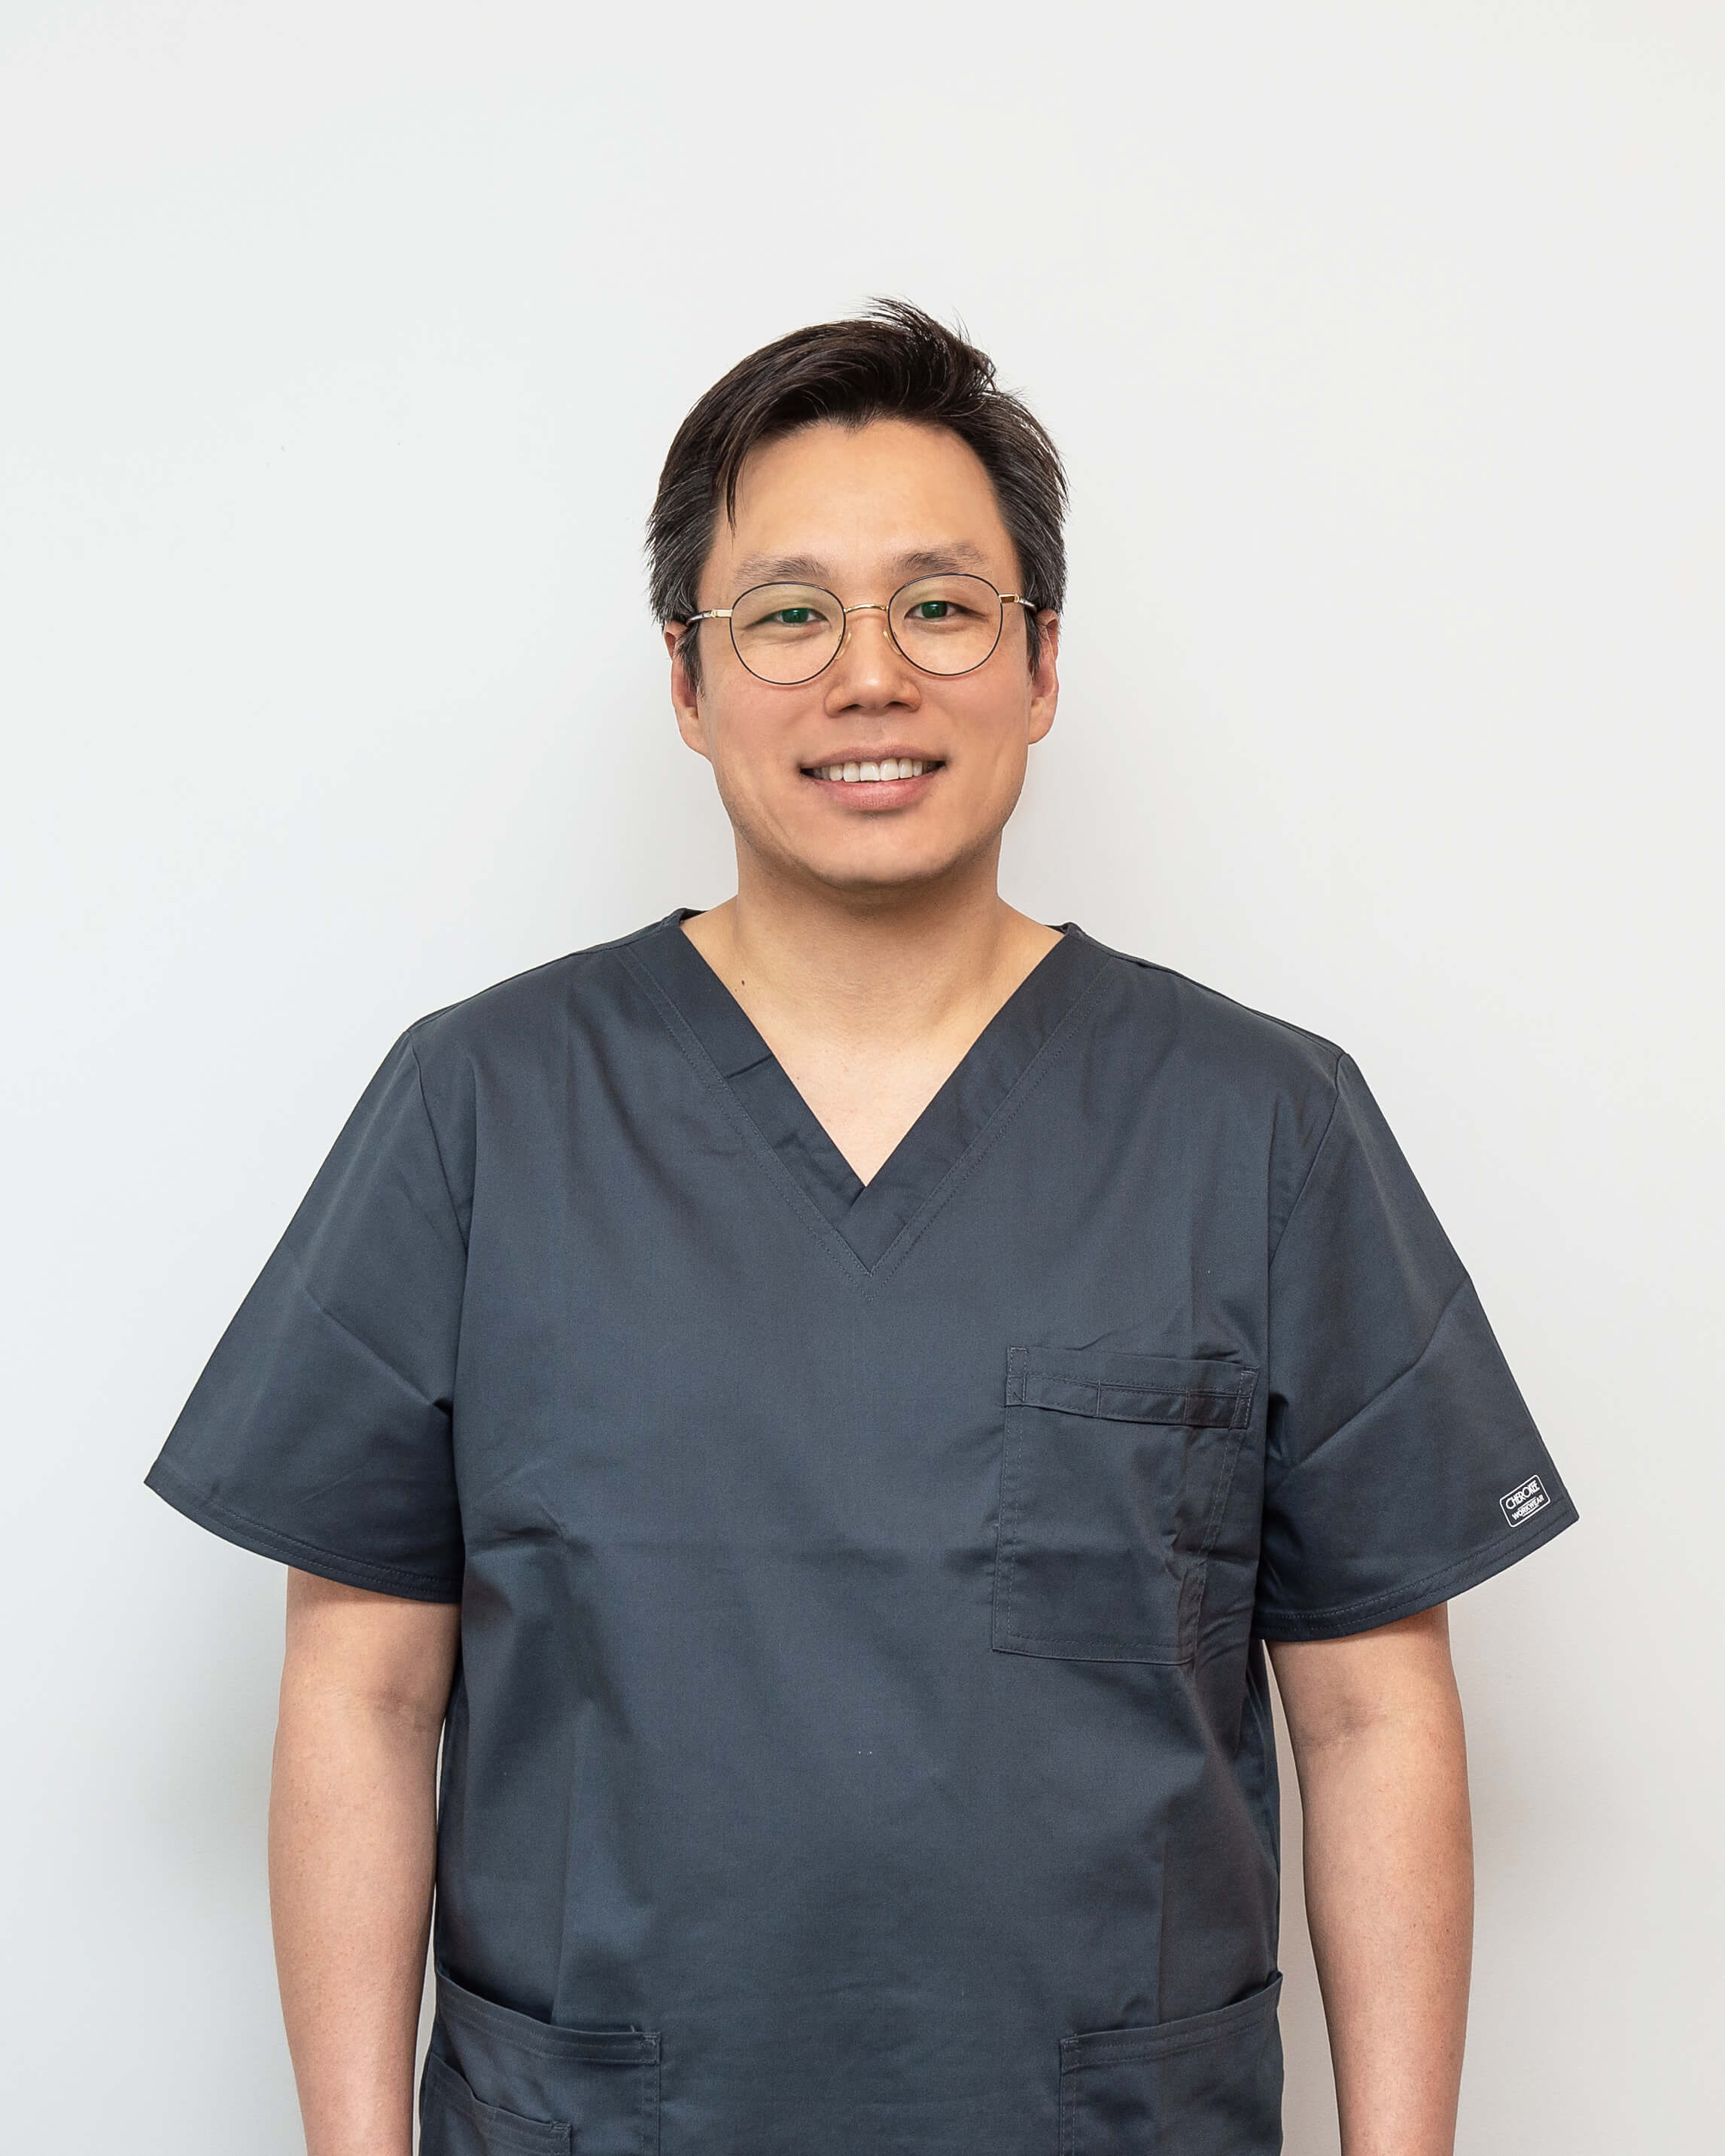 dentist Dr Michael Kim portrait